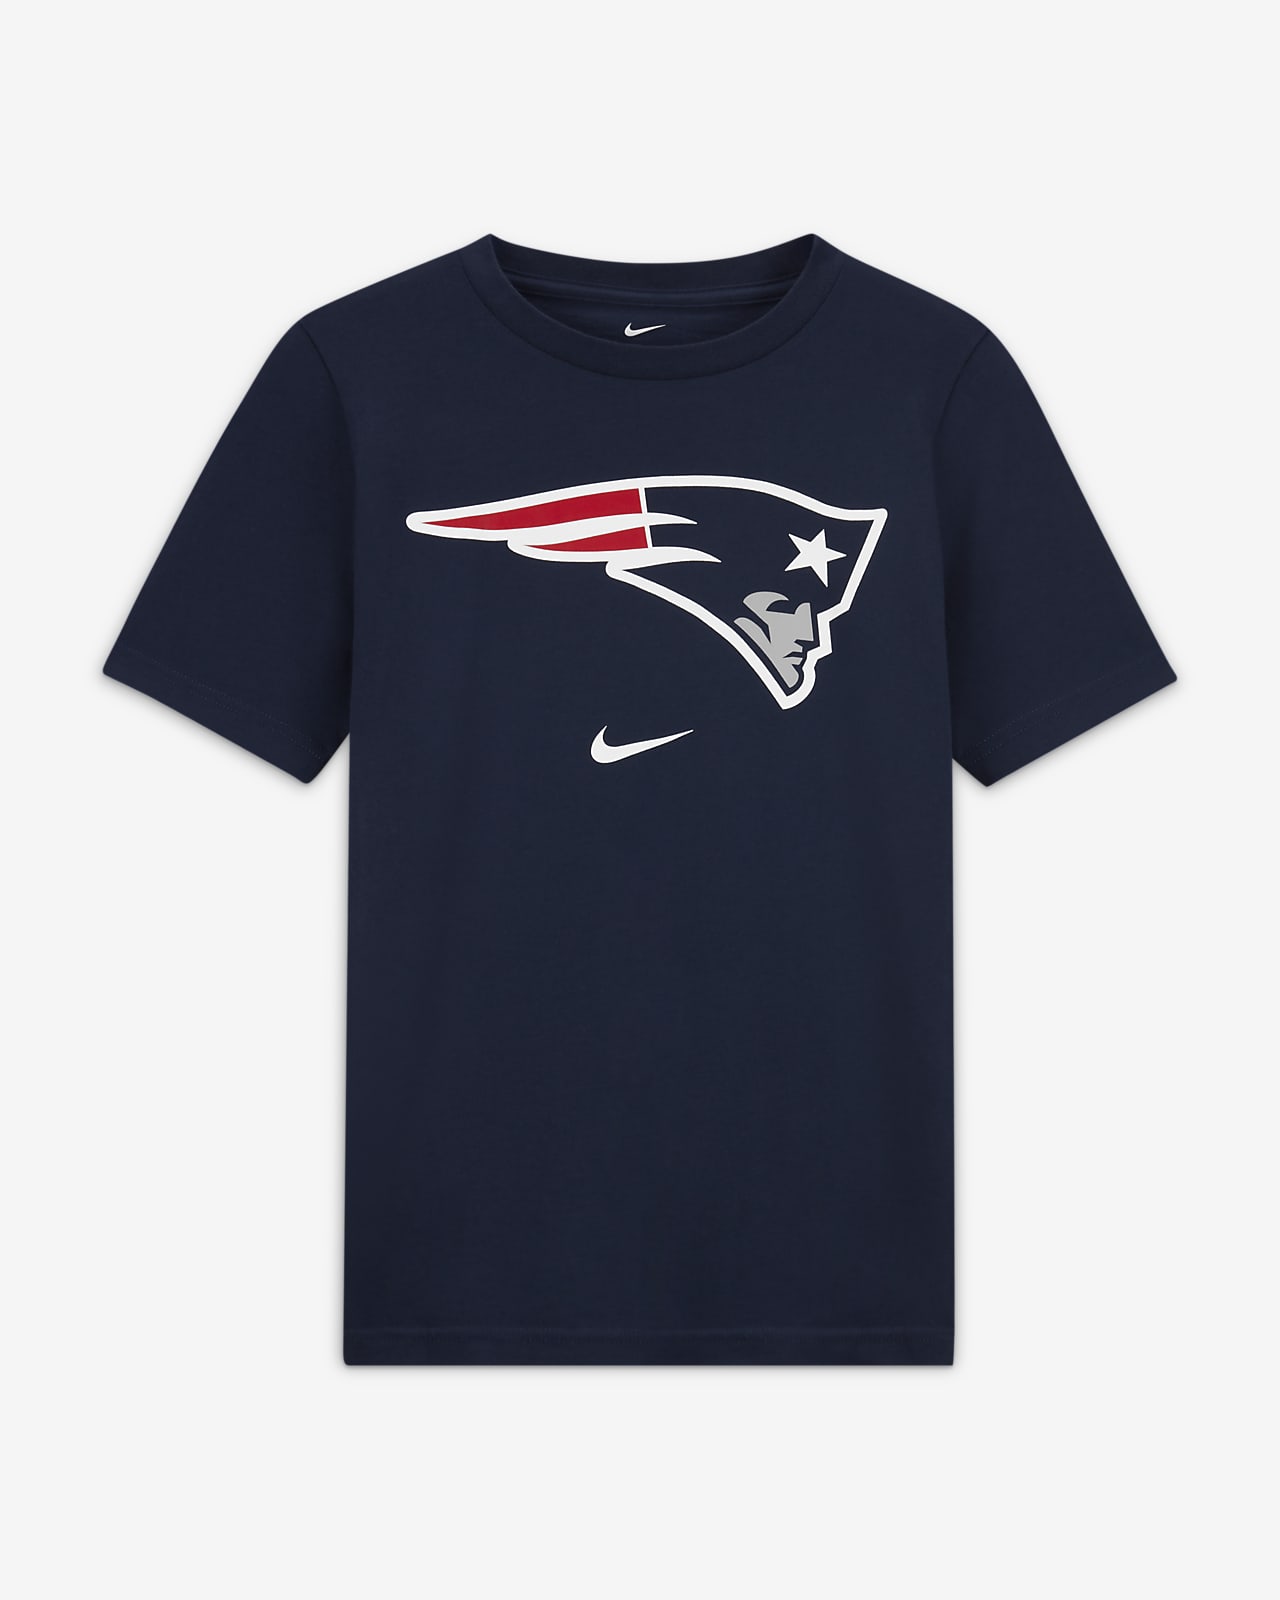 T-shirt Nike (NFL New England Patriots) pour ado